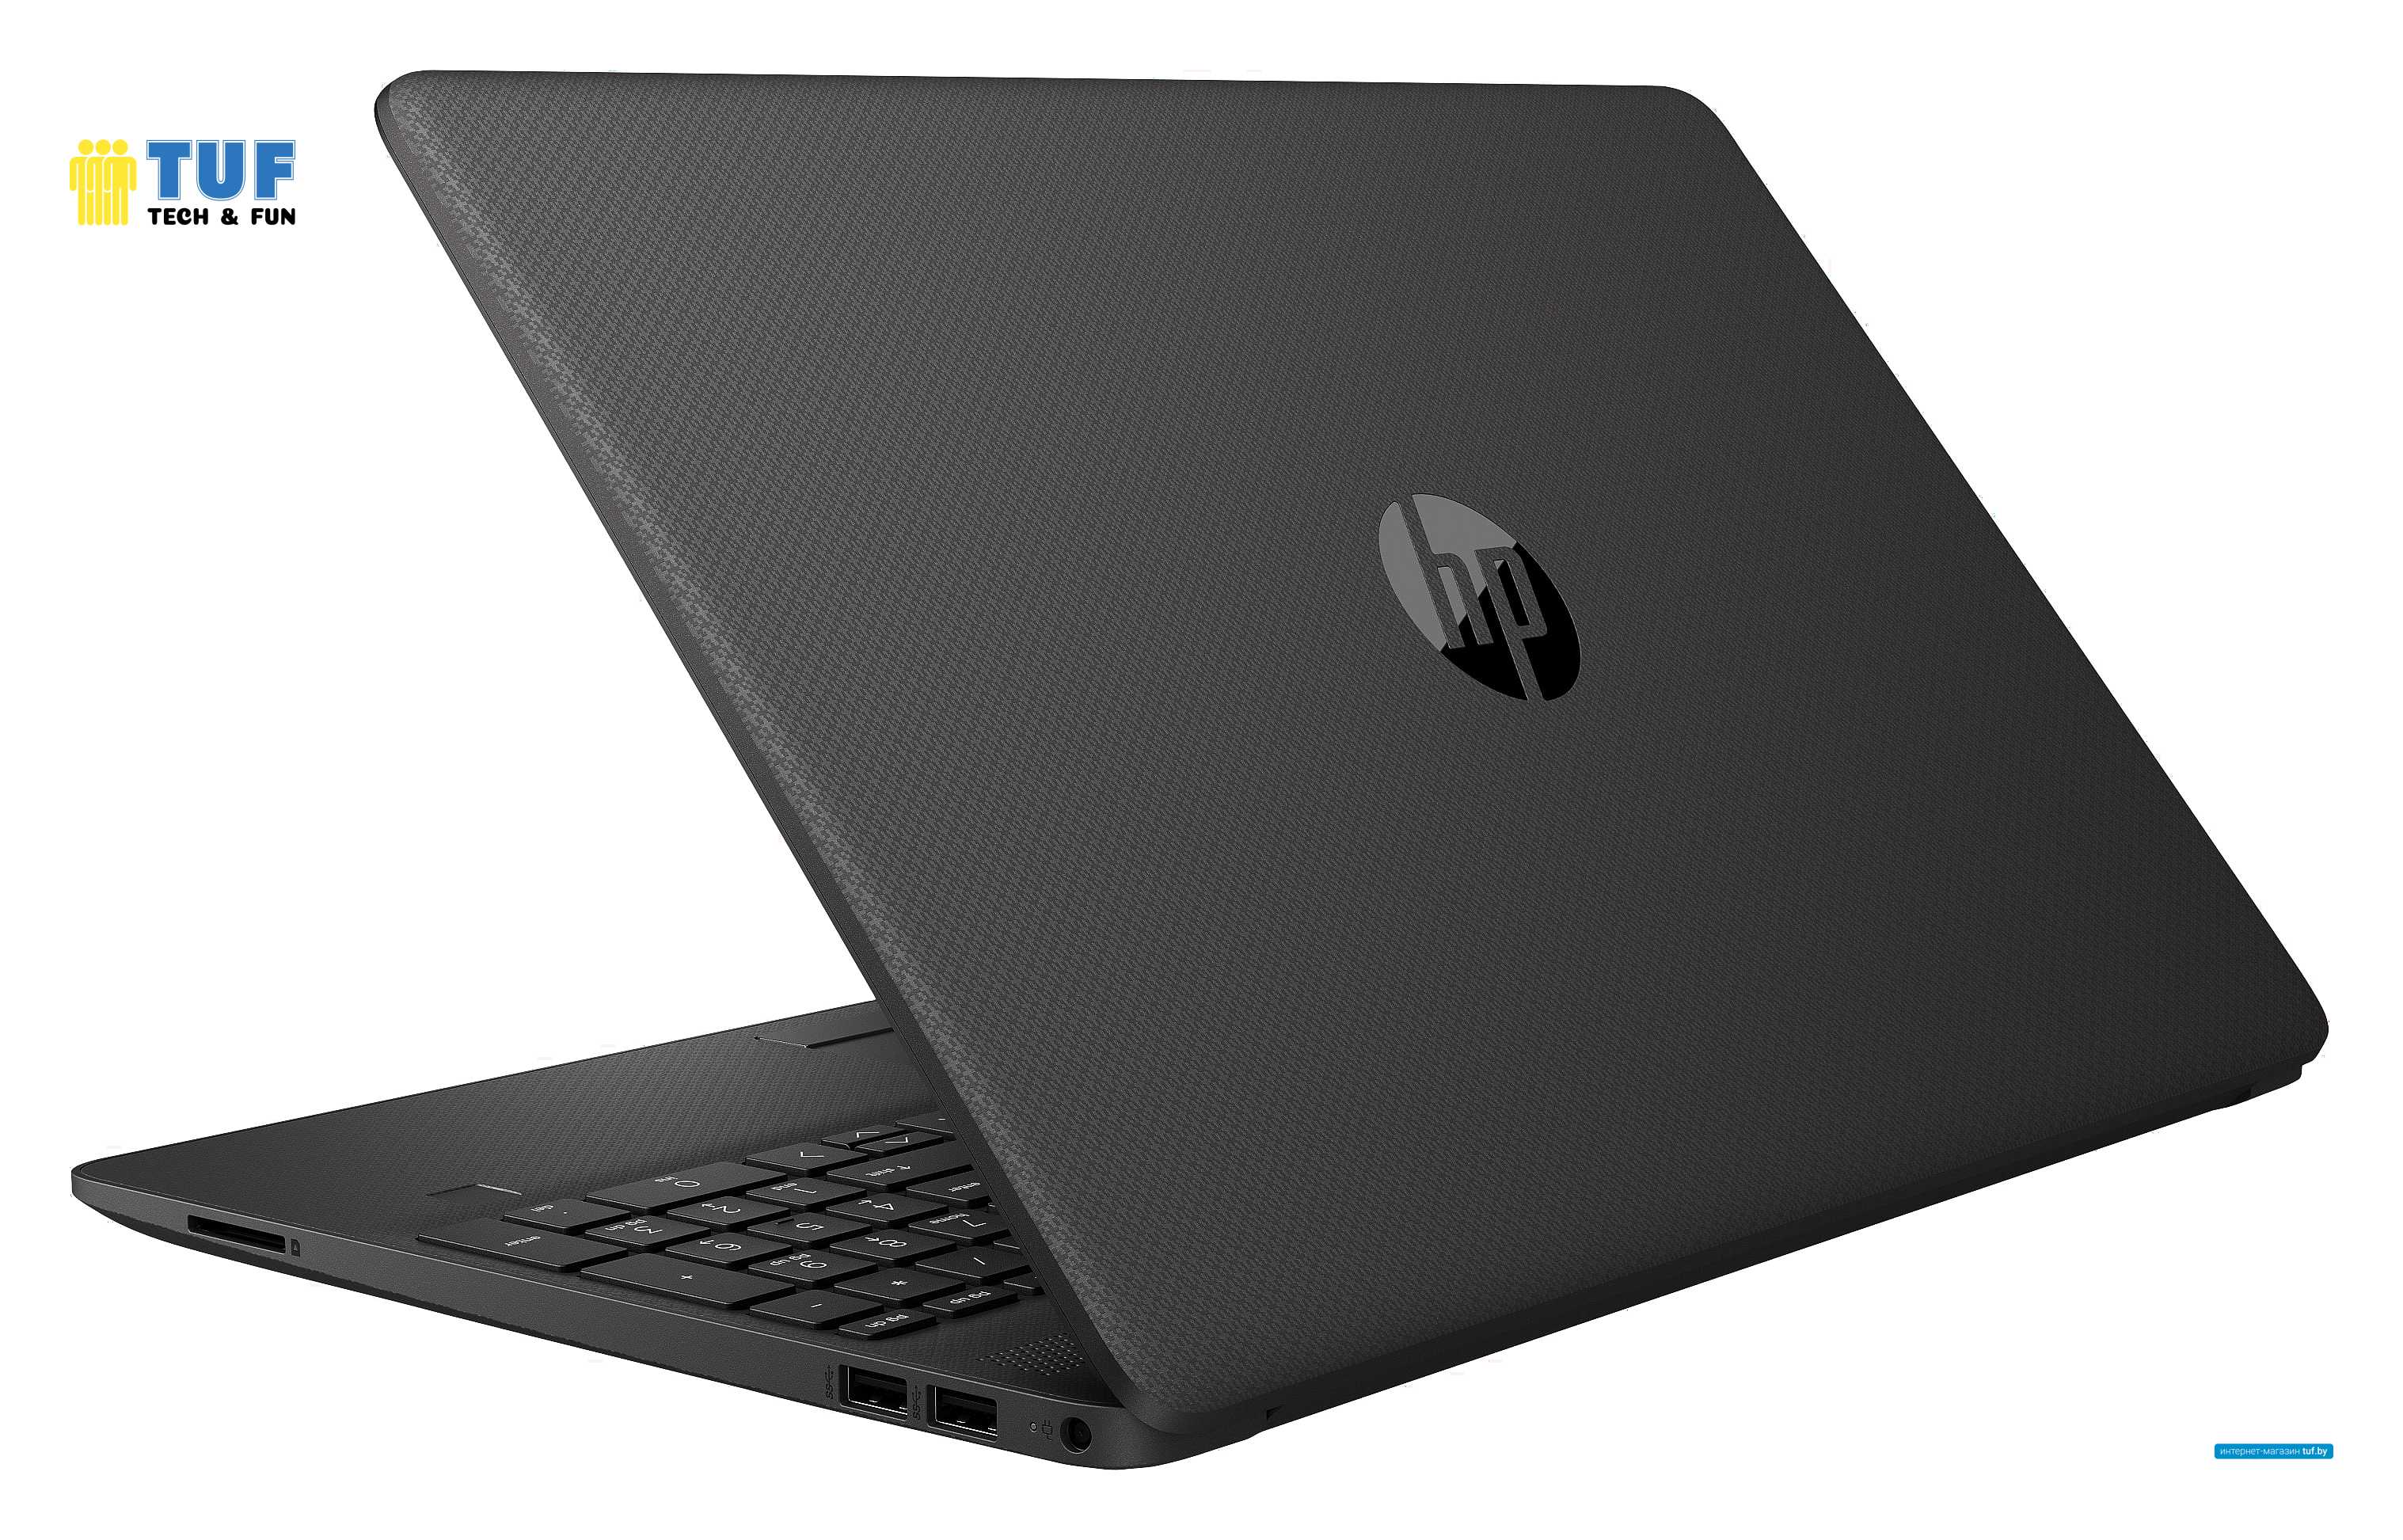 Ноутбук HP 250 G8 27K08EA